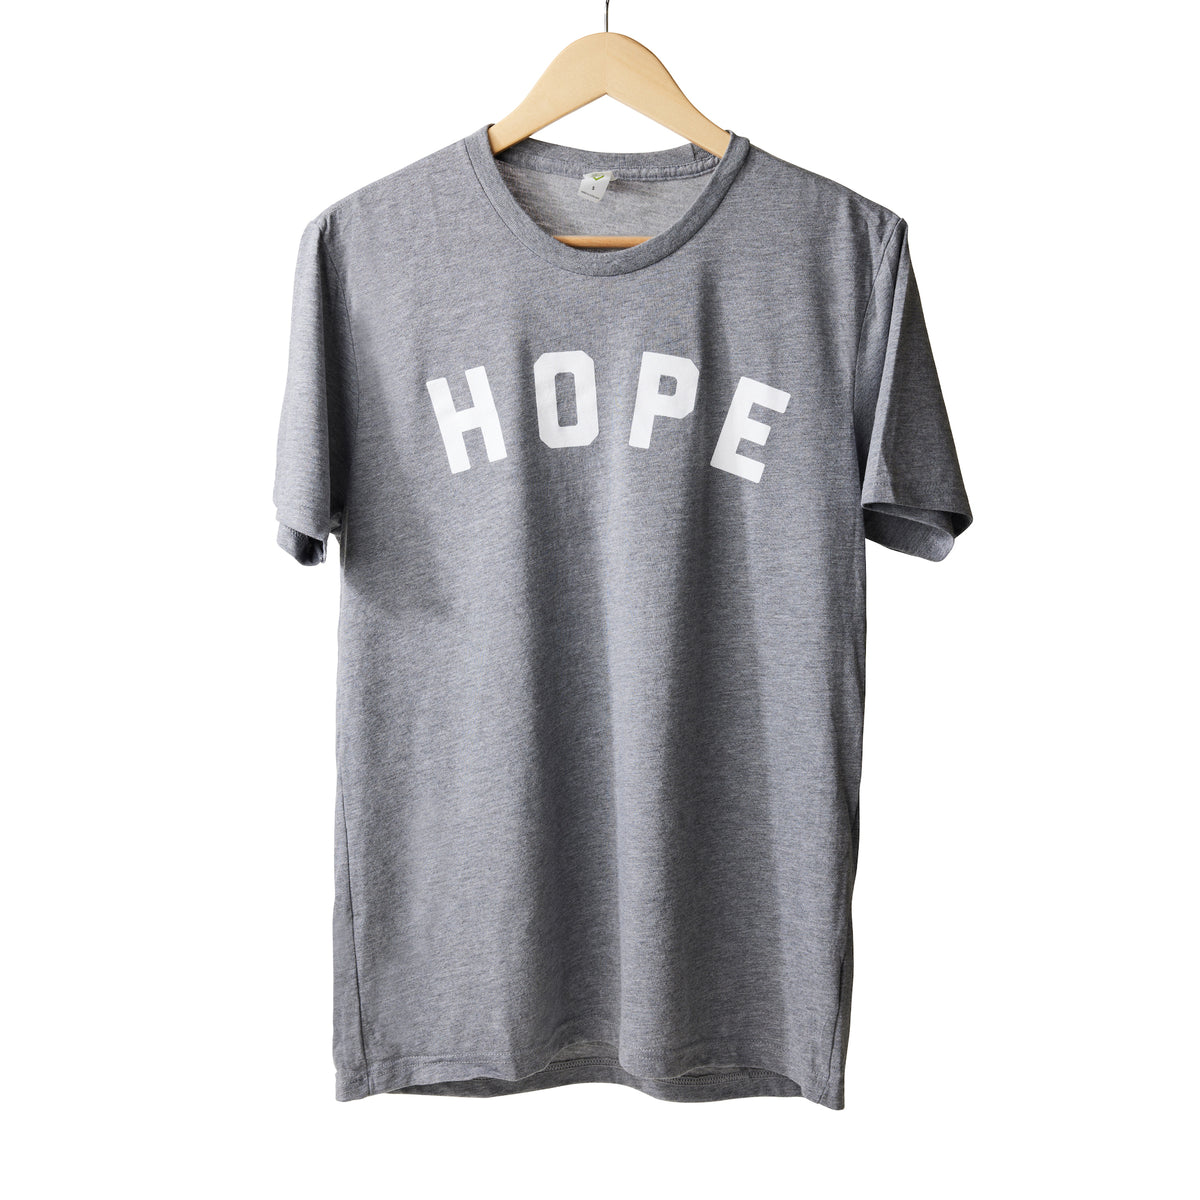 Grey Hope Shirt